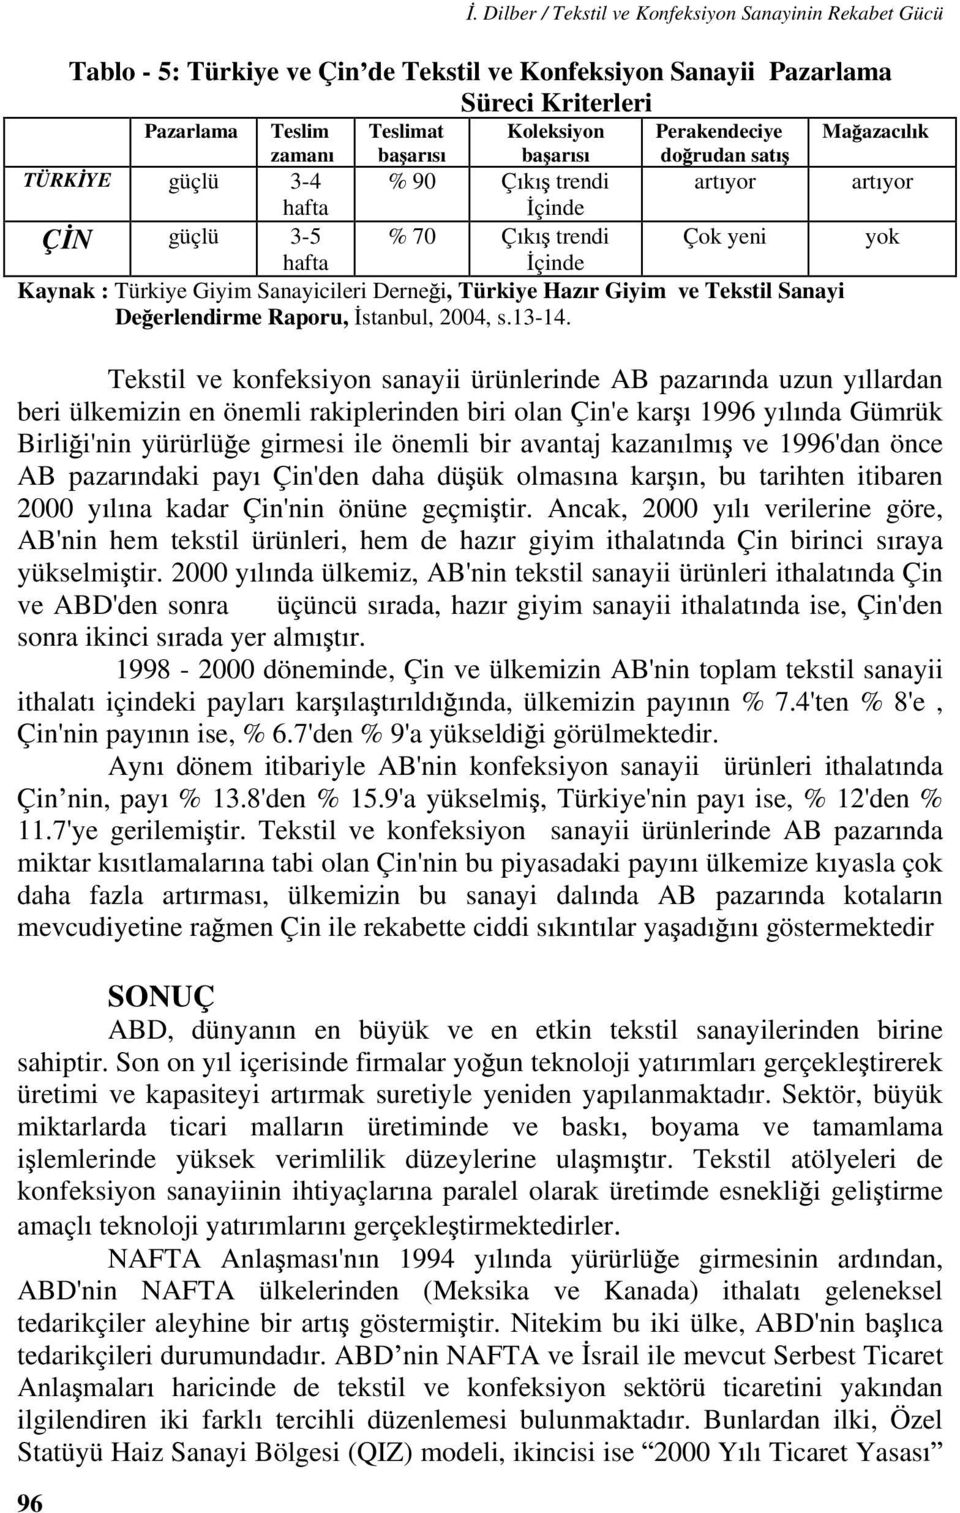 Derne i, Türkiye Haz r Giyim ve Tekstil Sanayi De erlendirme Raporu, stanbul, 2004, s.13-14.